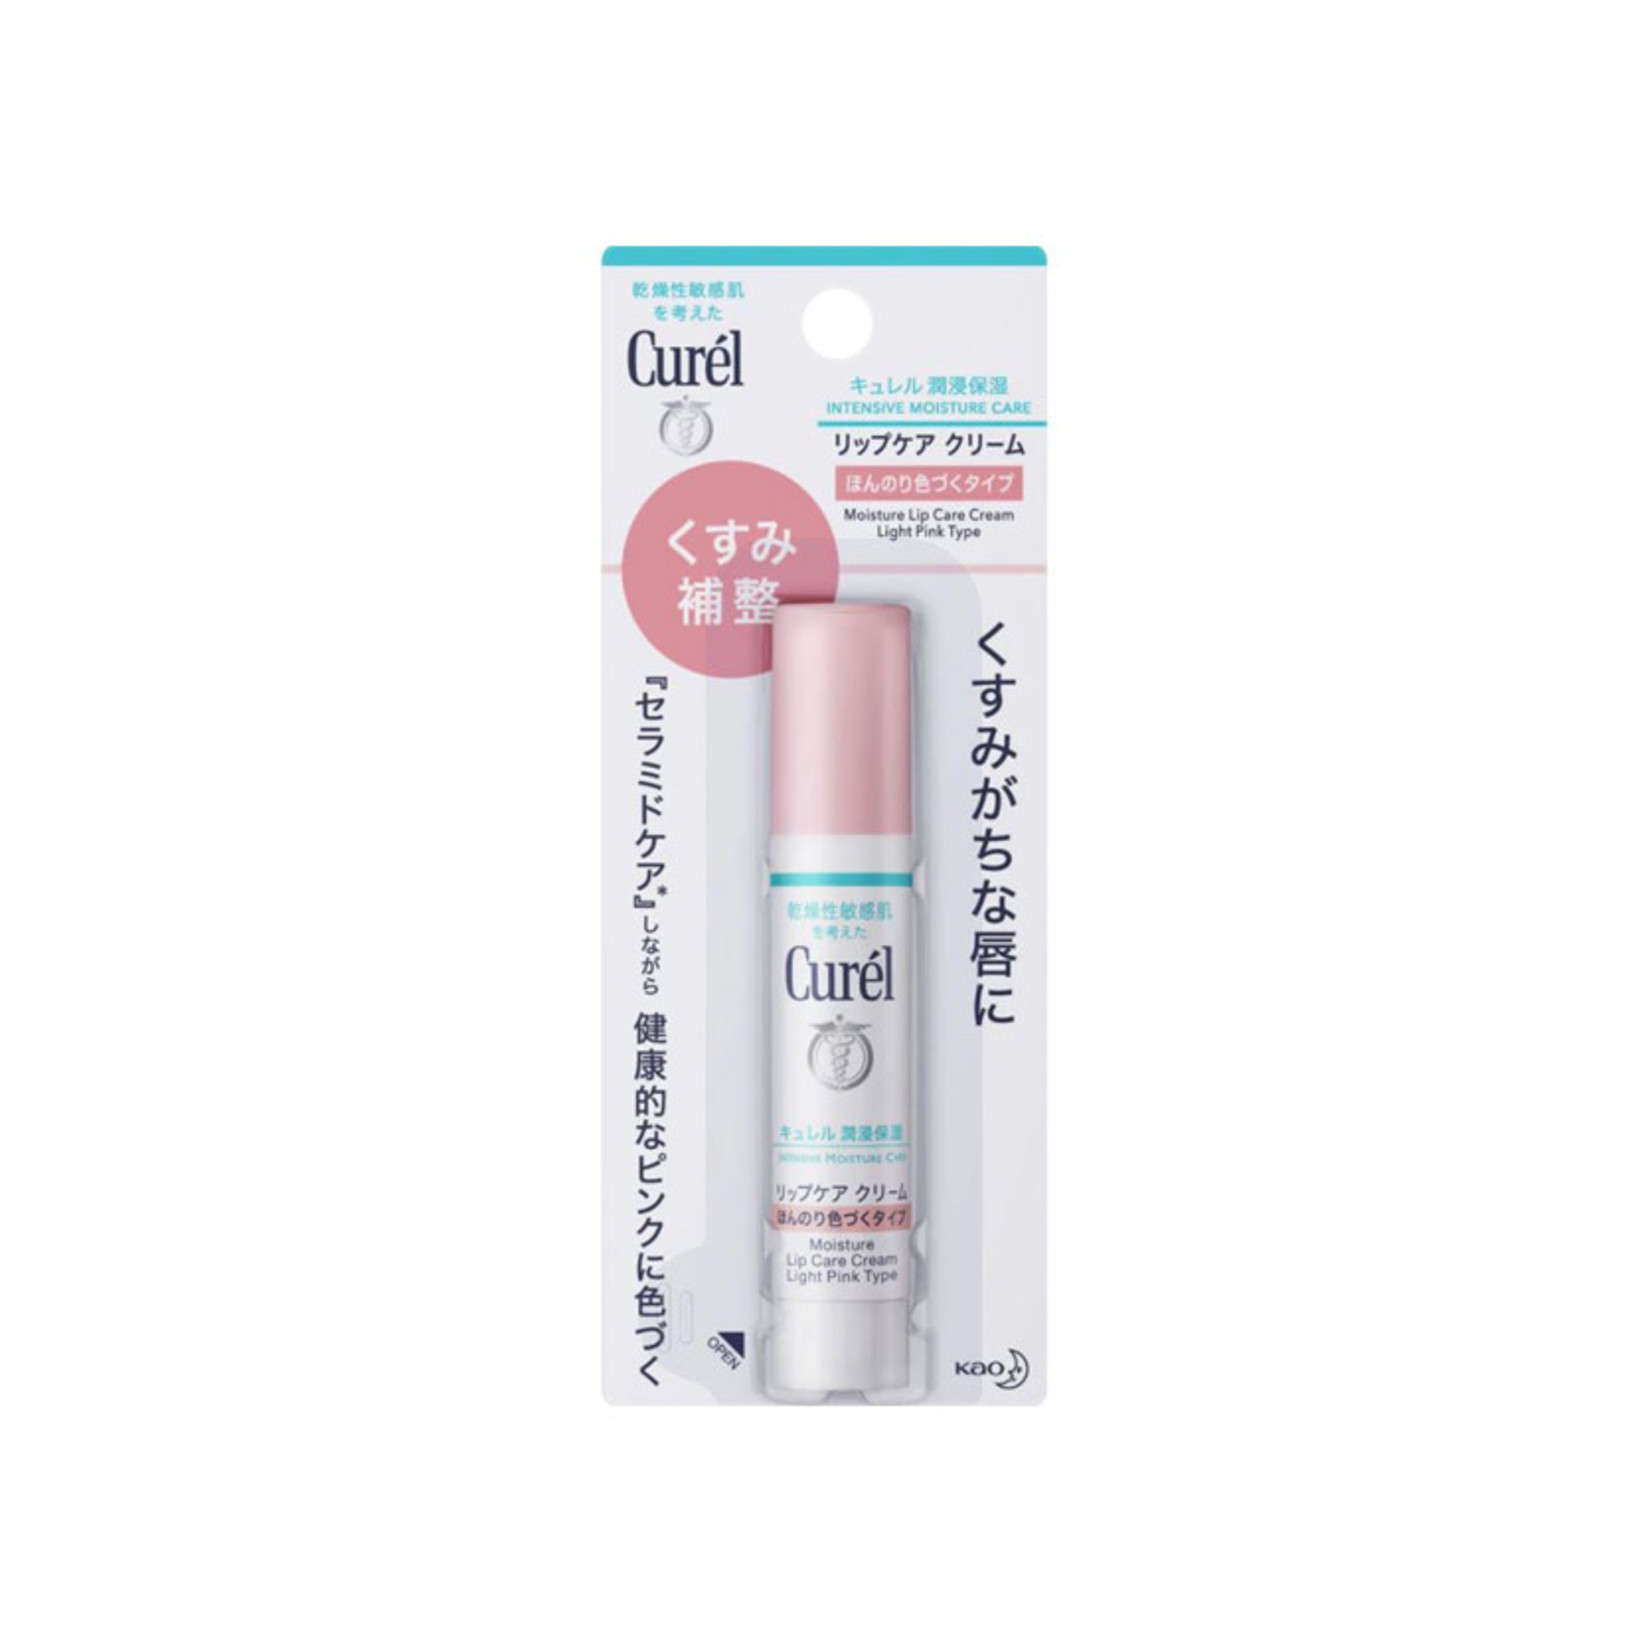 Curel Kao Curél Lip Care Cream Stick - For Dry & Sensitive Skin